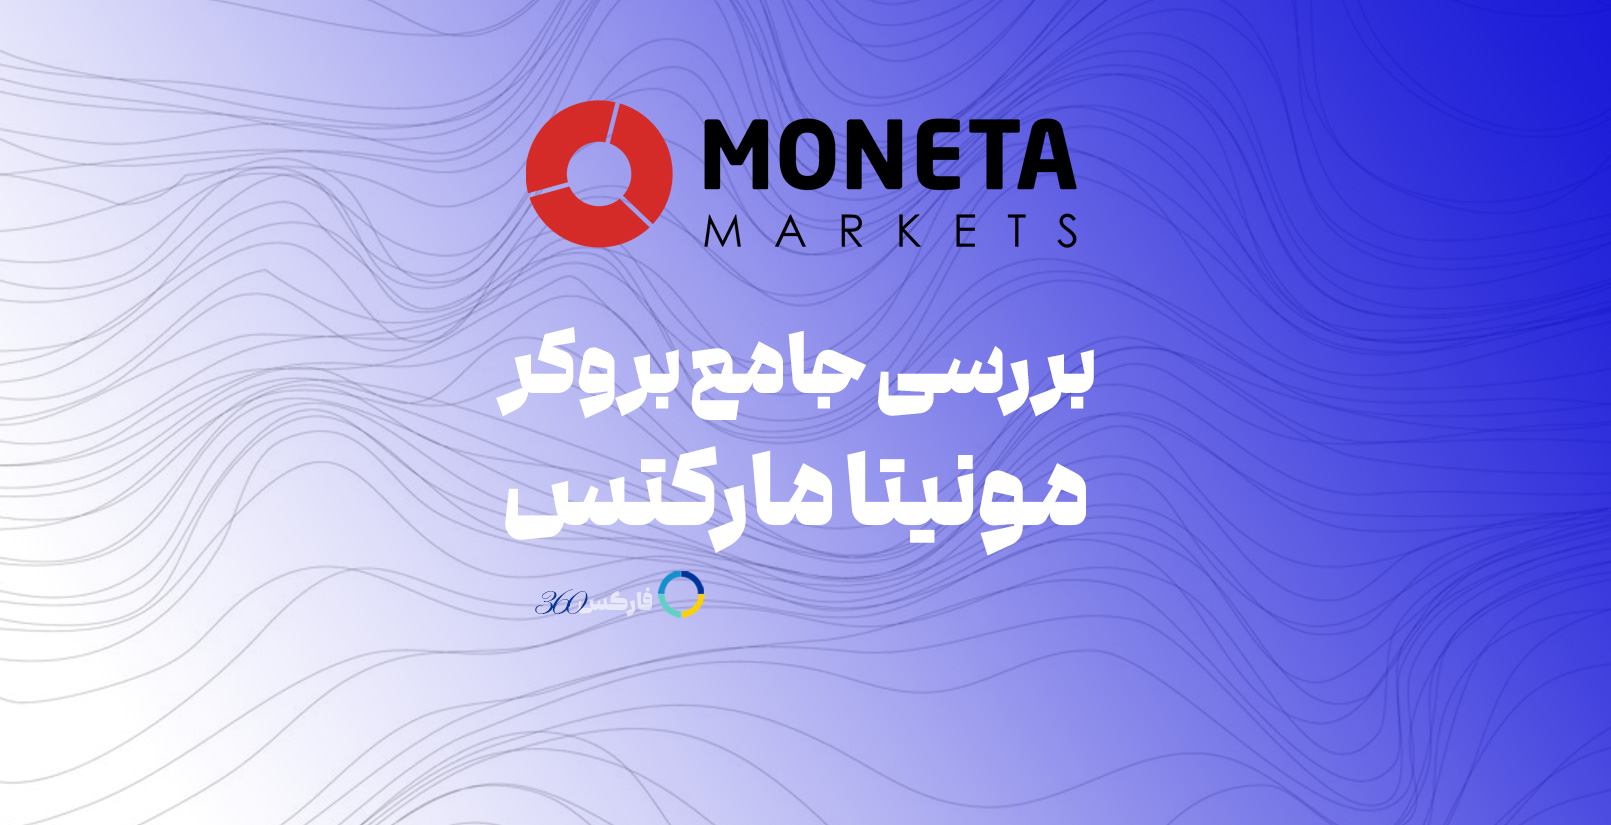 مونیتا مارکتس MonetaMarkets بررسی و معرفی کامل این بروکر در سایت فارکس 360